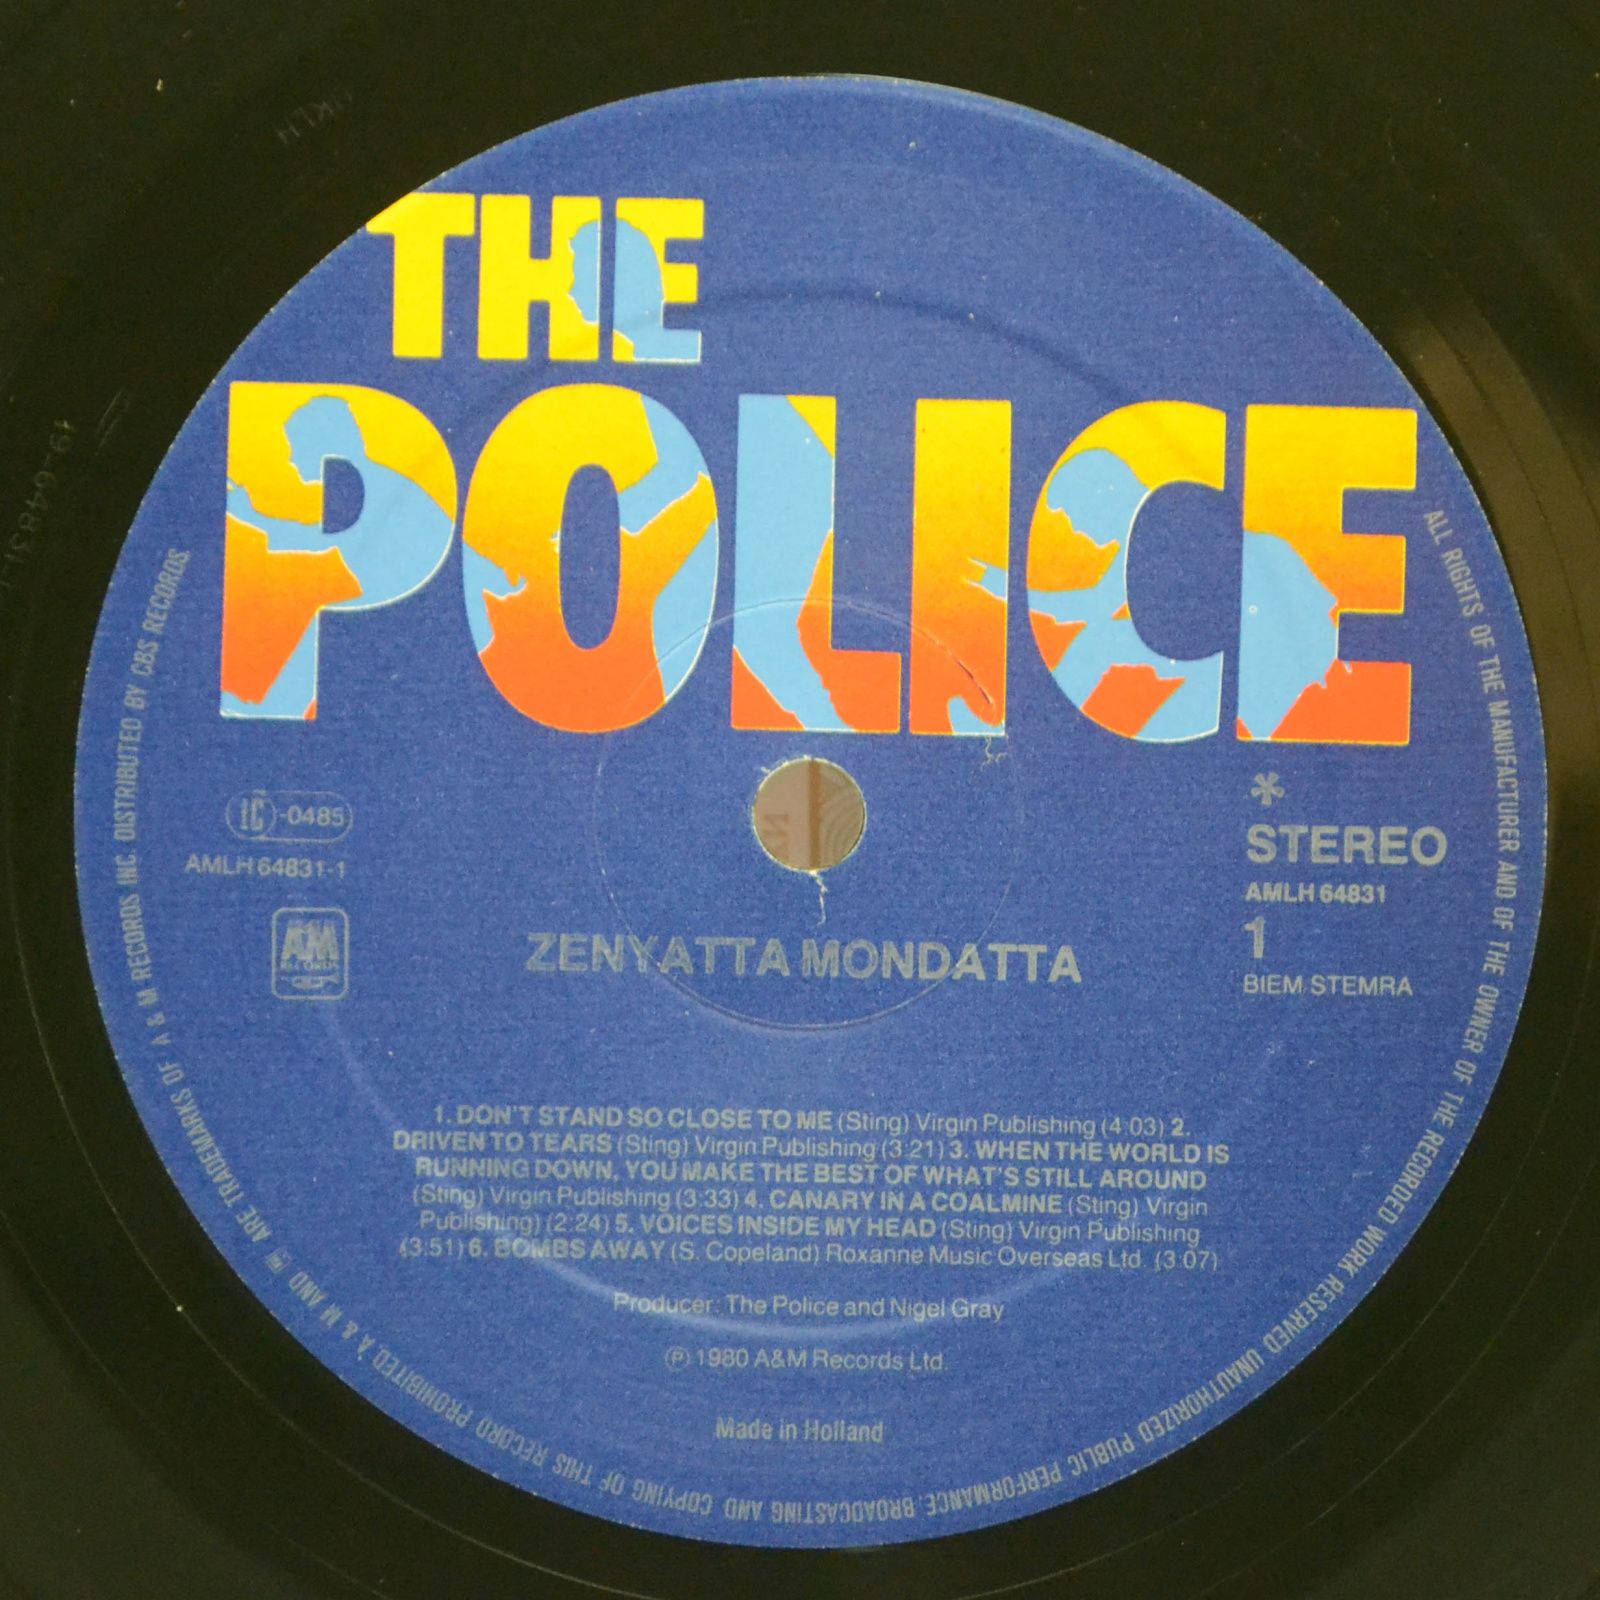 Police — Zenyatta Mondatta, 1980